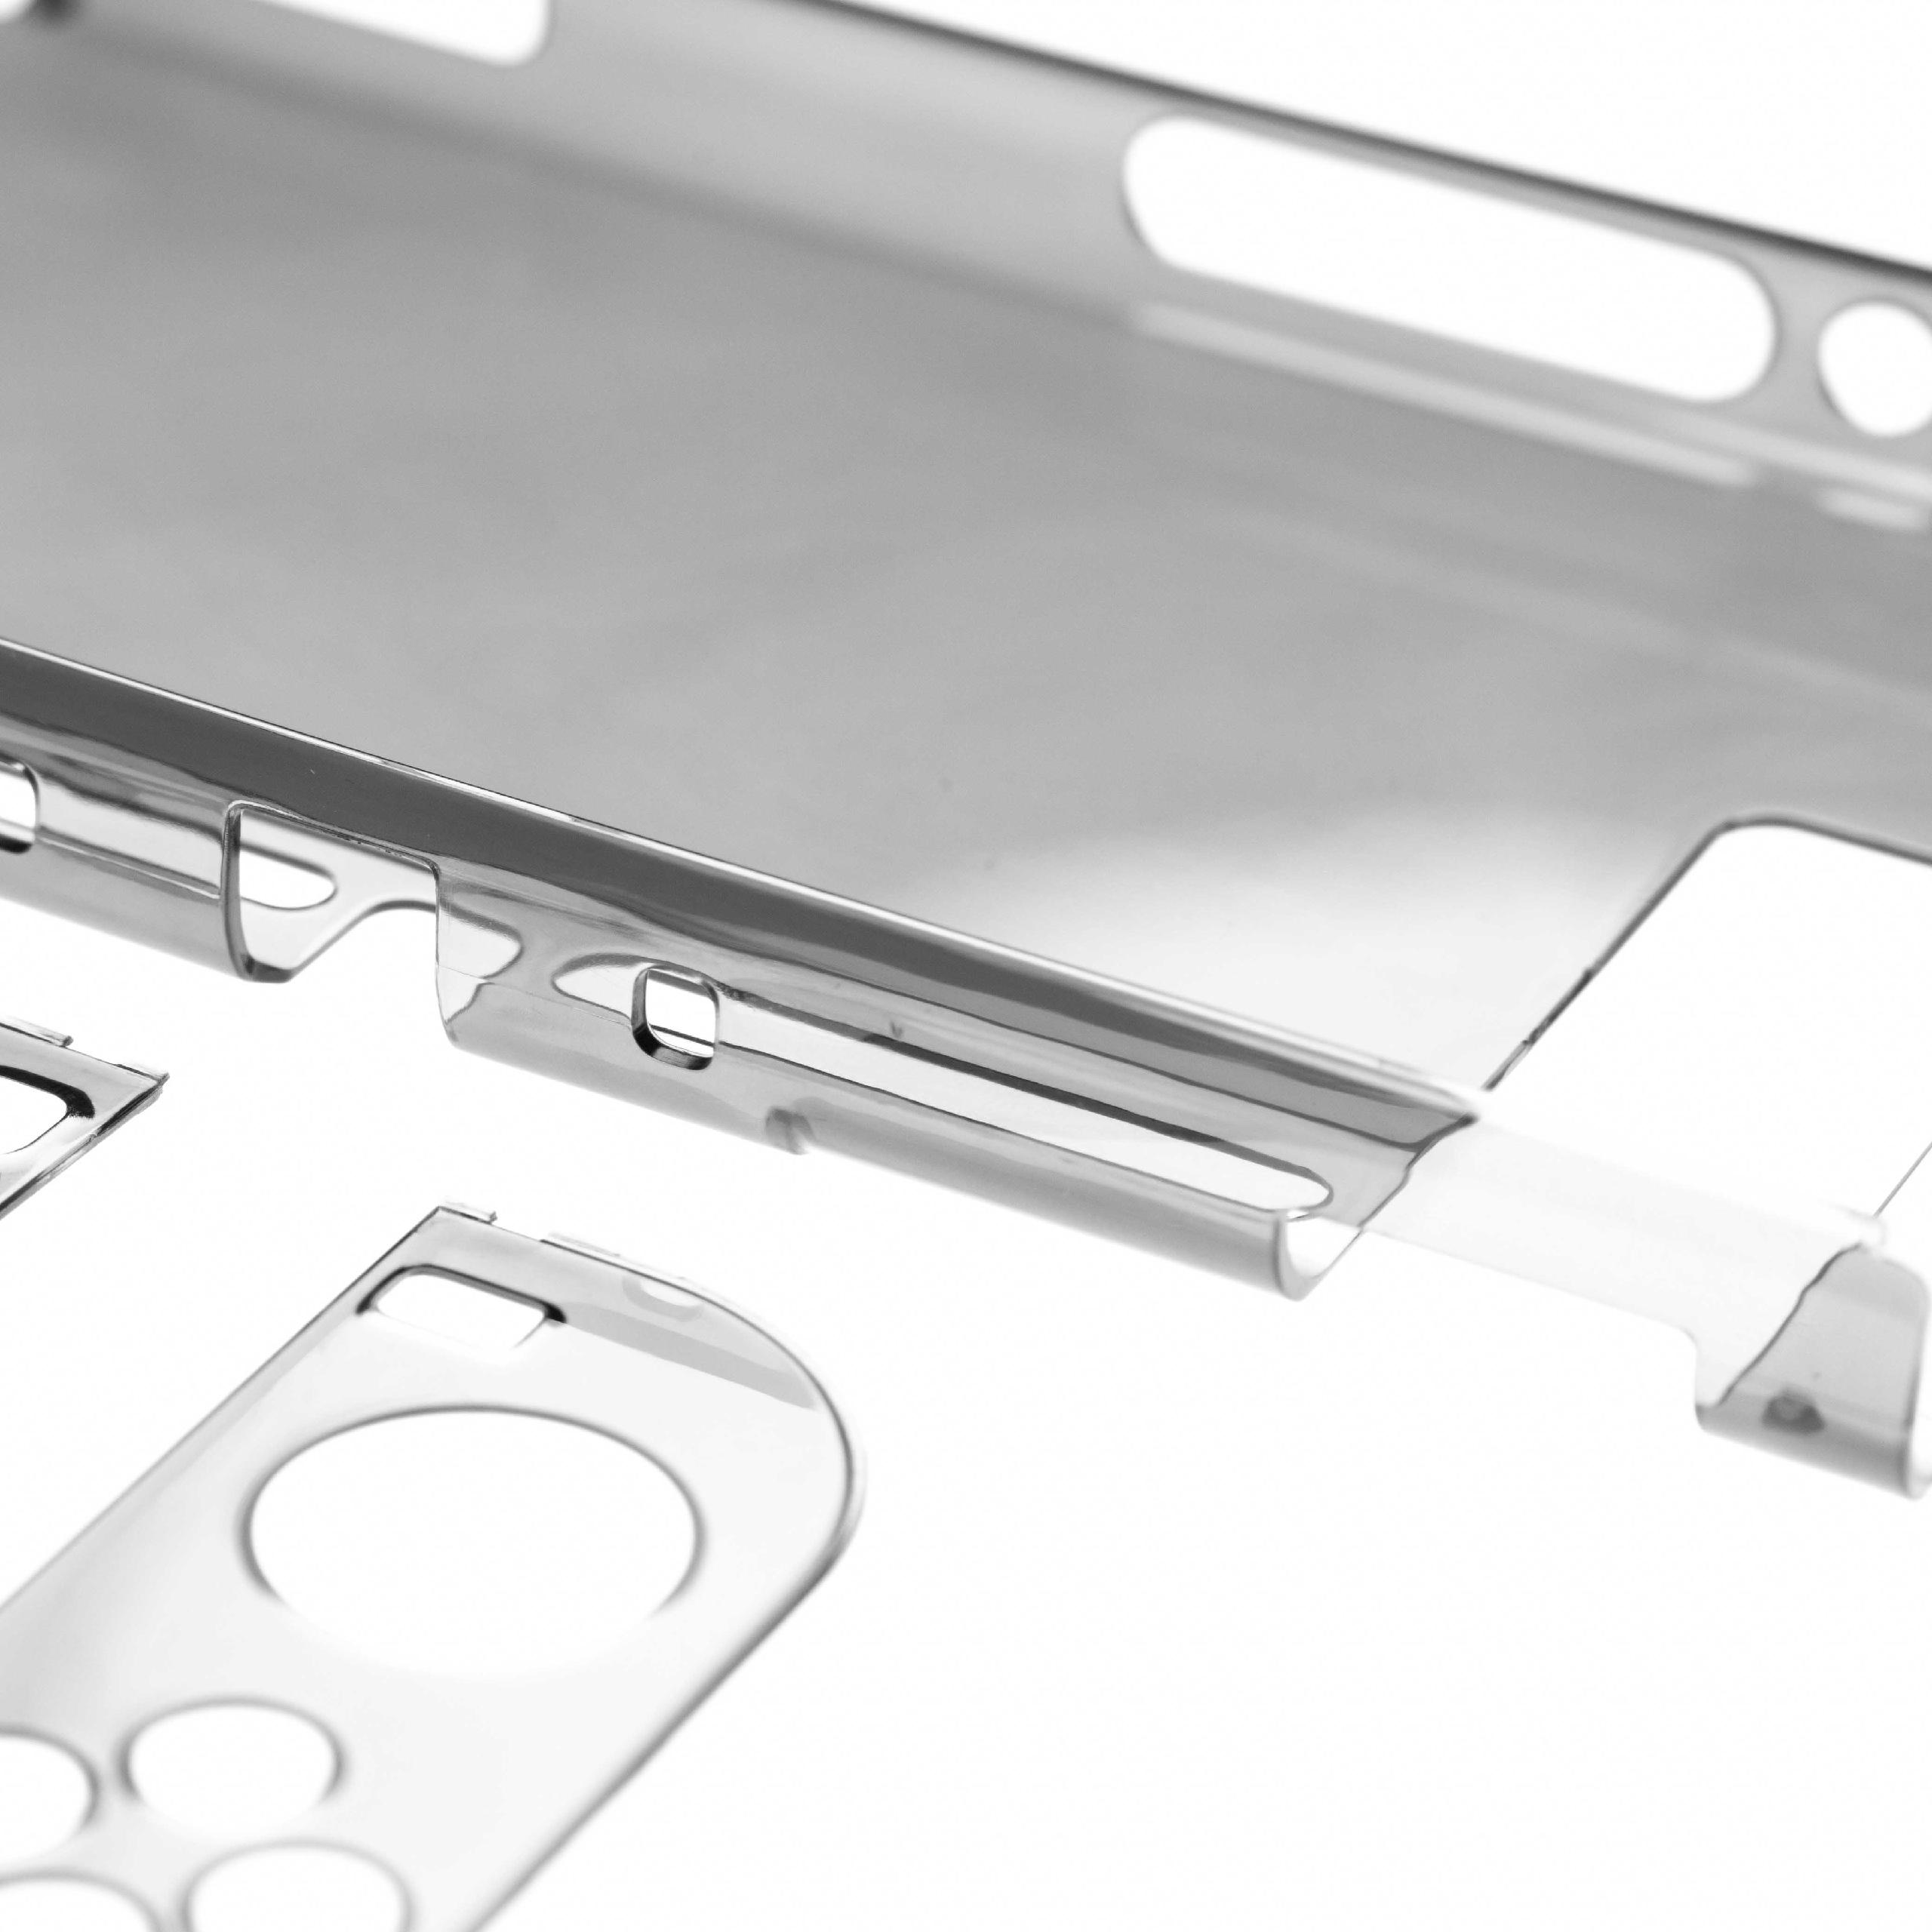 Étui pour console de jeux vidéo Nintendo Switch - Housse polycarbonate transparent / noir